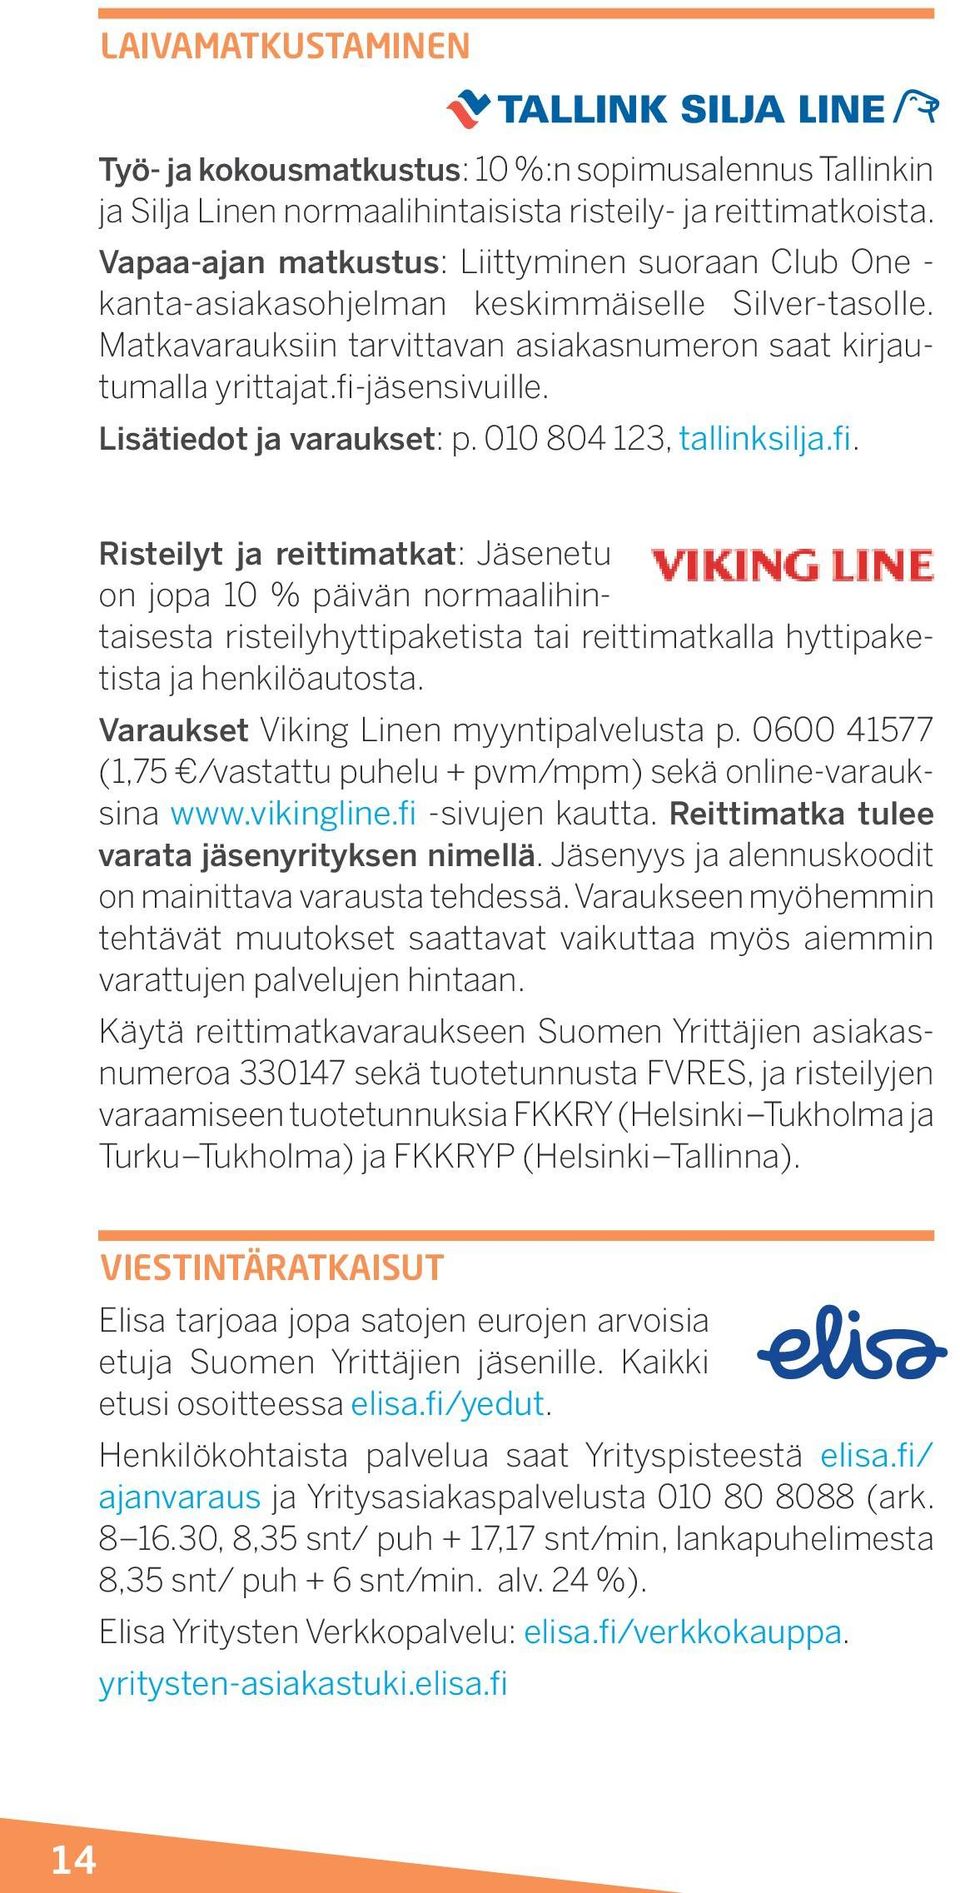 Lisätiedot ja varaukset: p. 010 804 123, tallinksilja.fi.